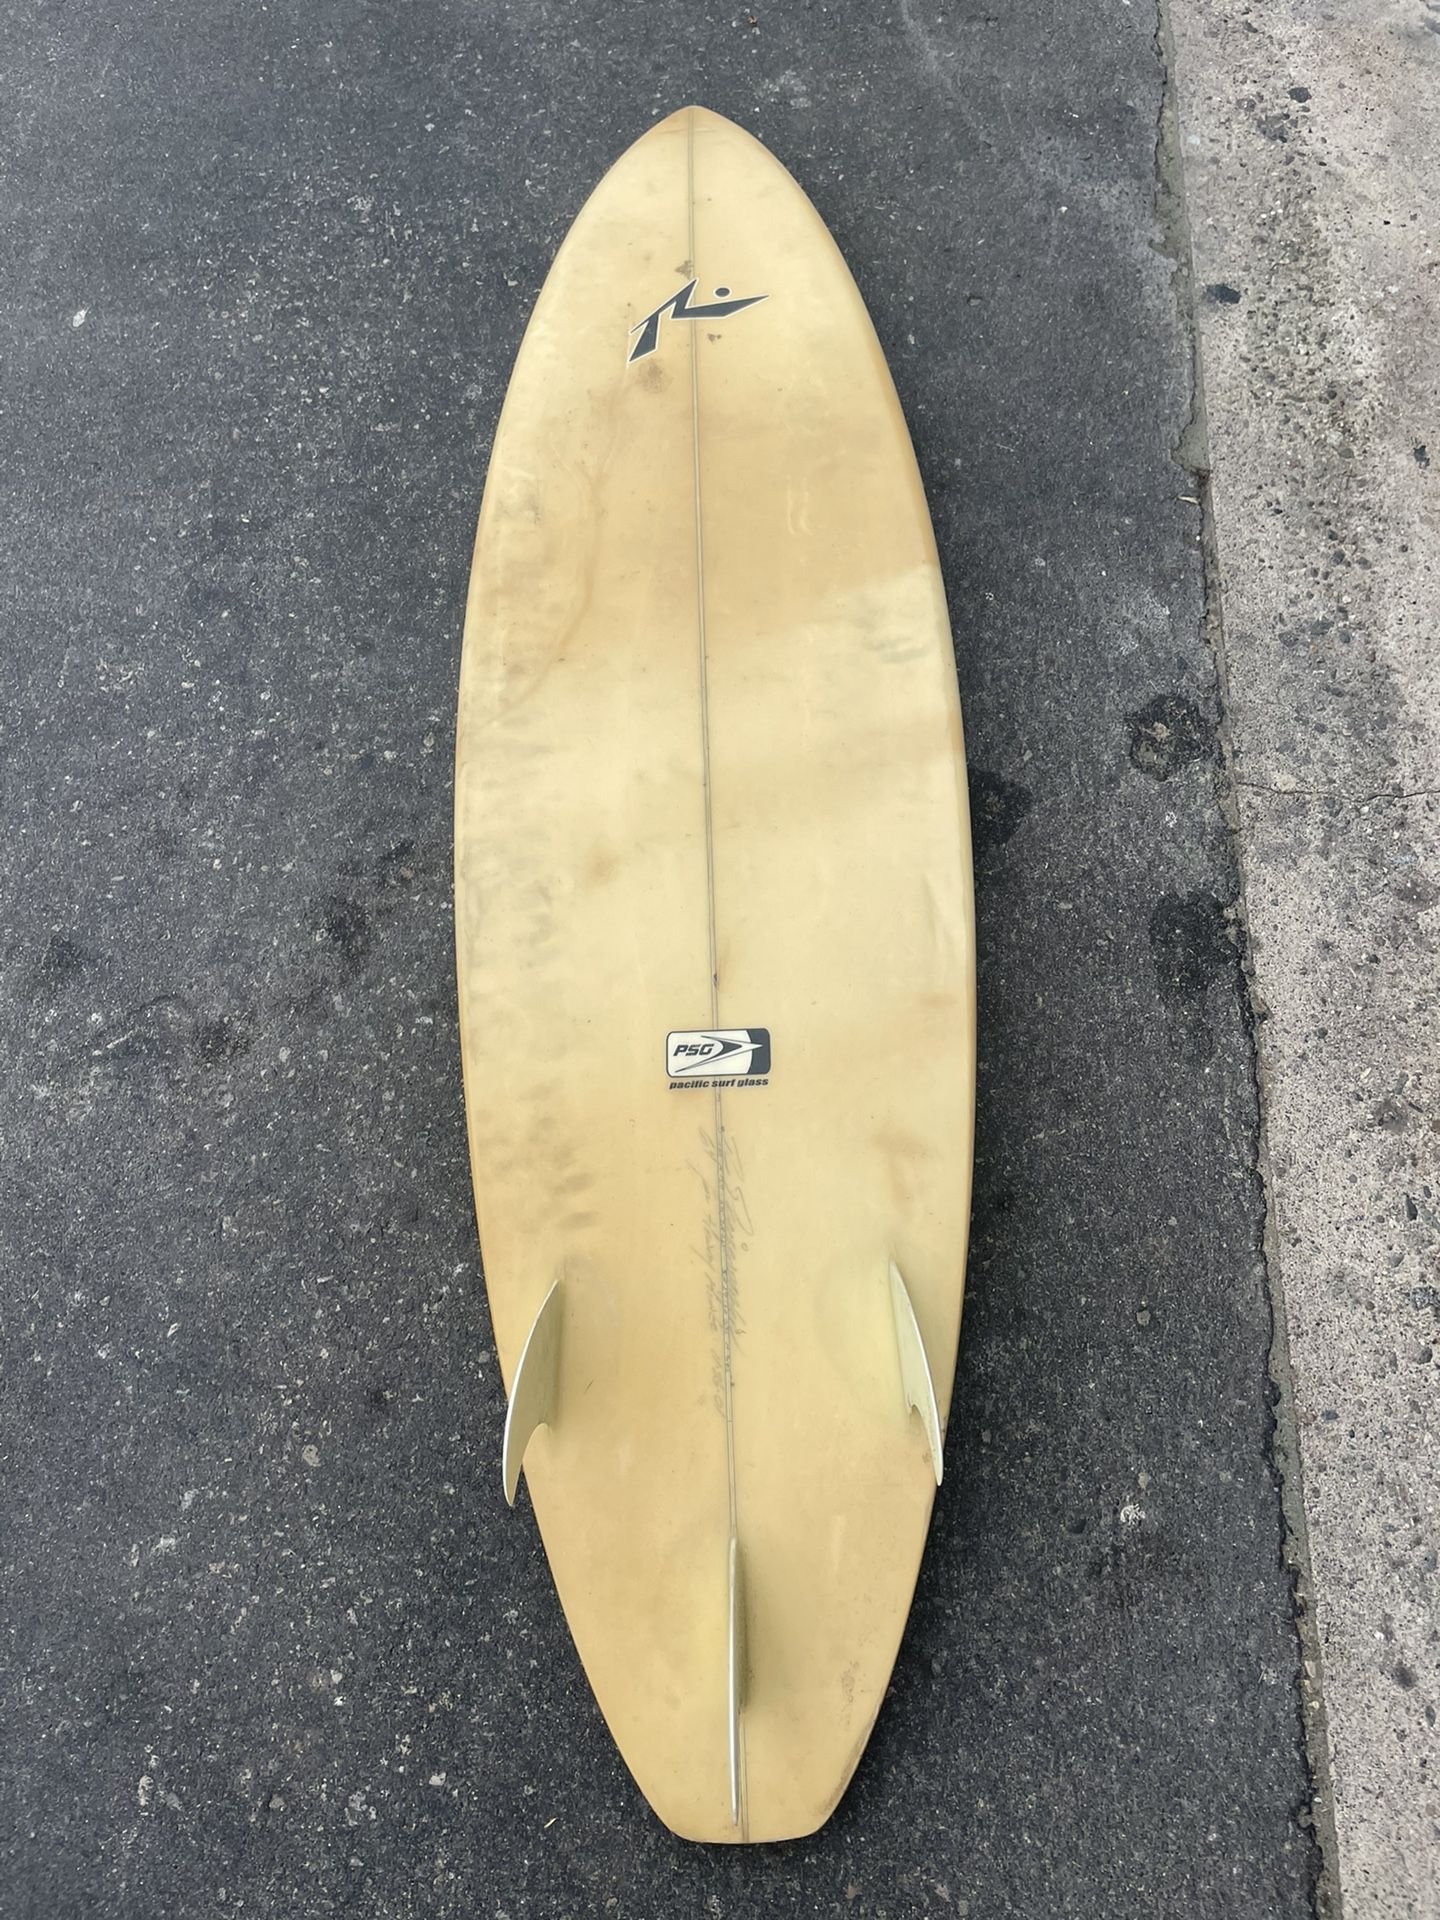 Rusty Surfboard 6’4”